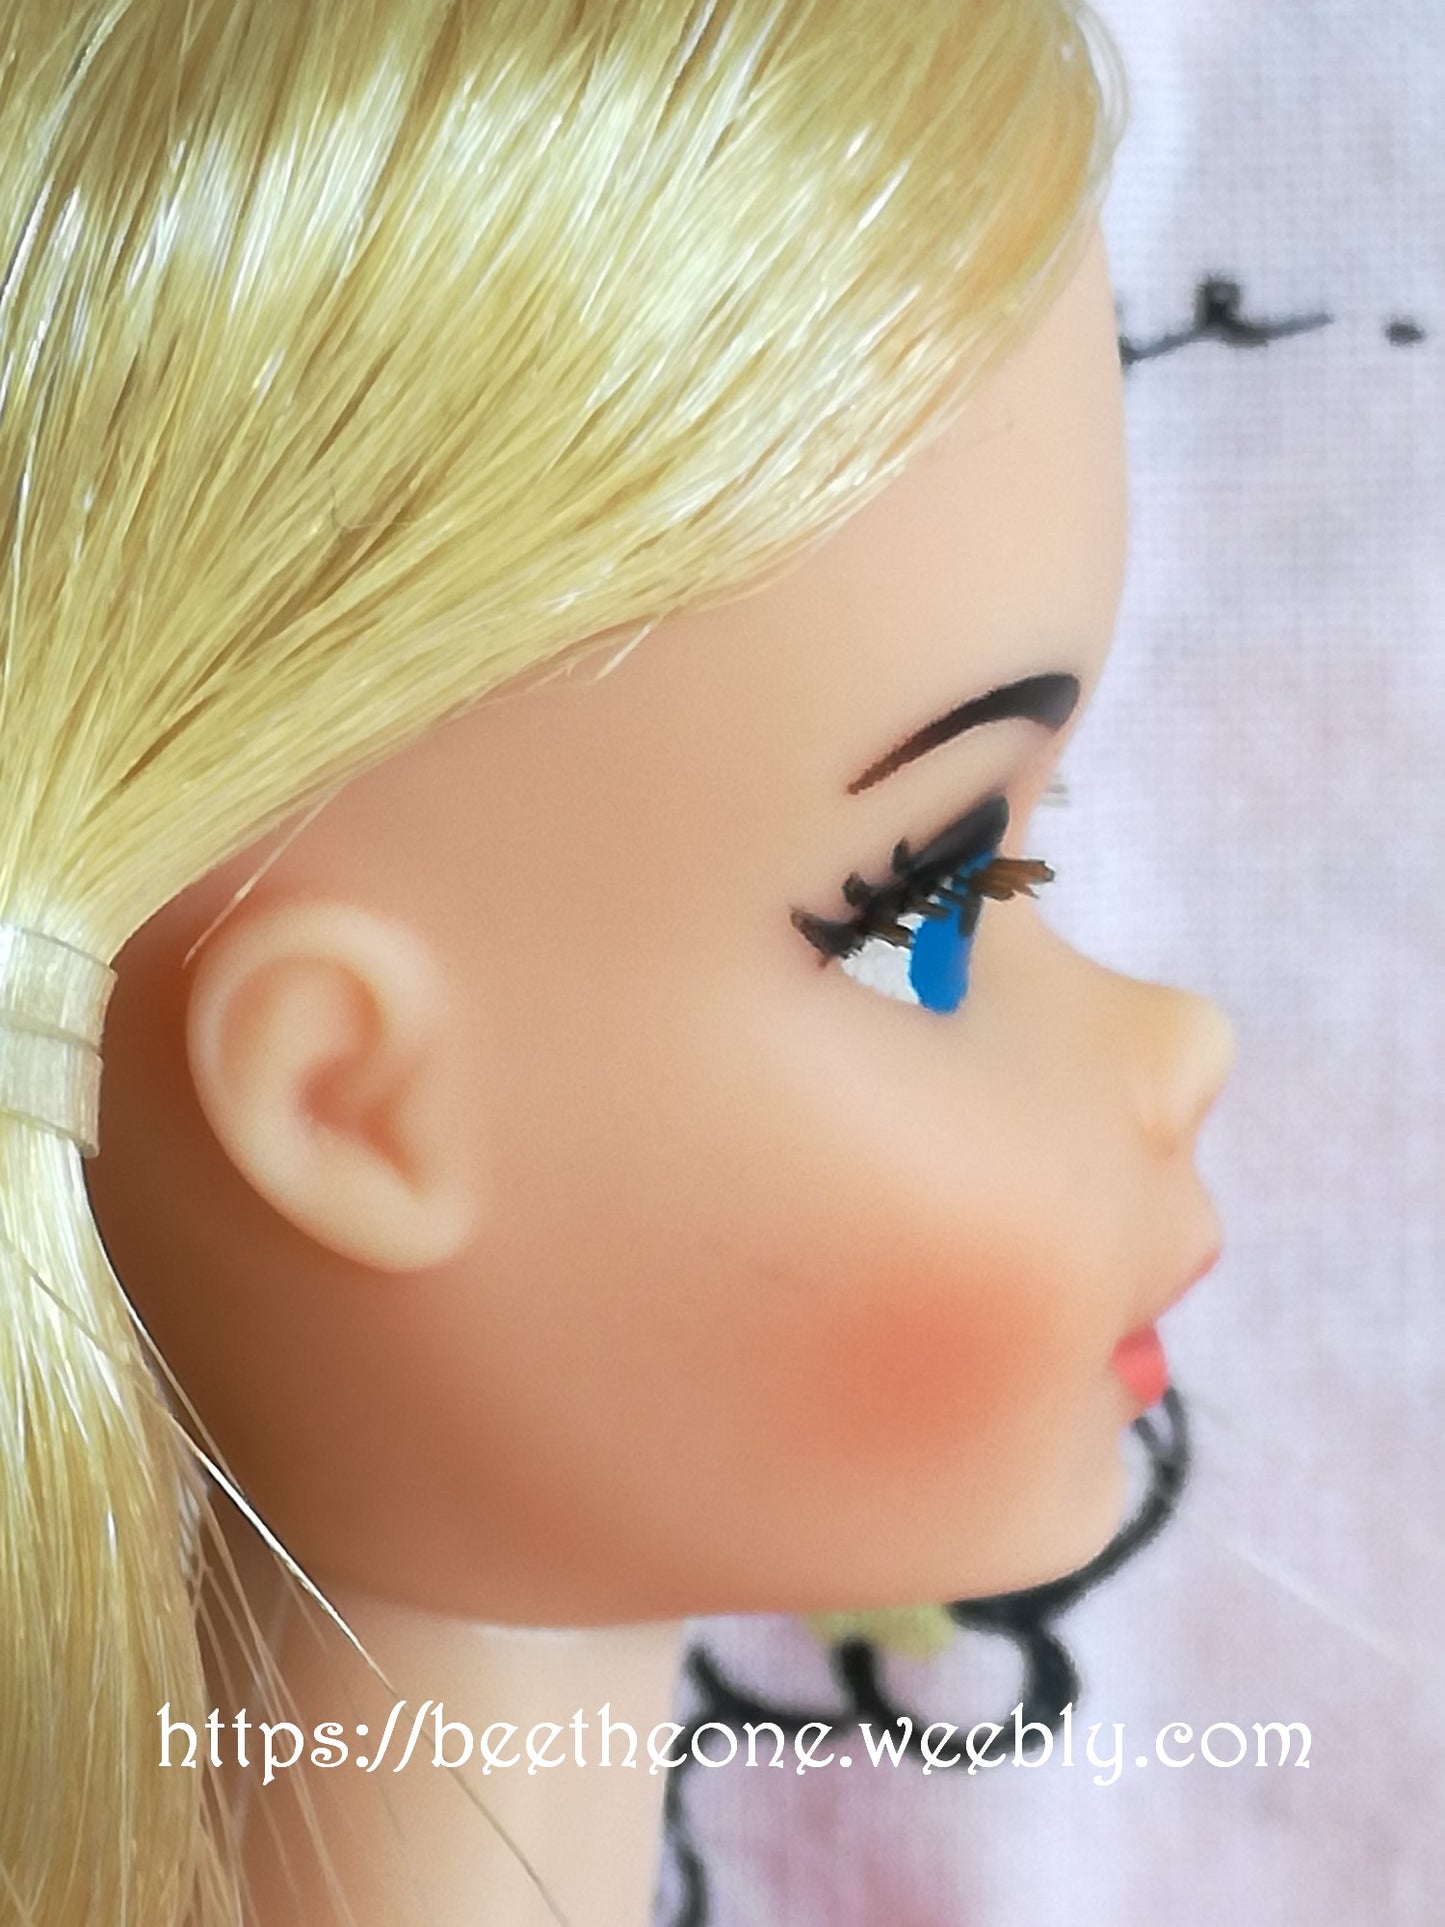 RARE Barbie Partytime #9925 - Mattel 1977 - Poupée nue - exclusivité Europe et Canada